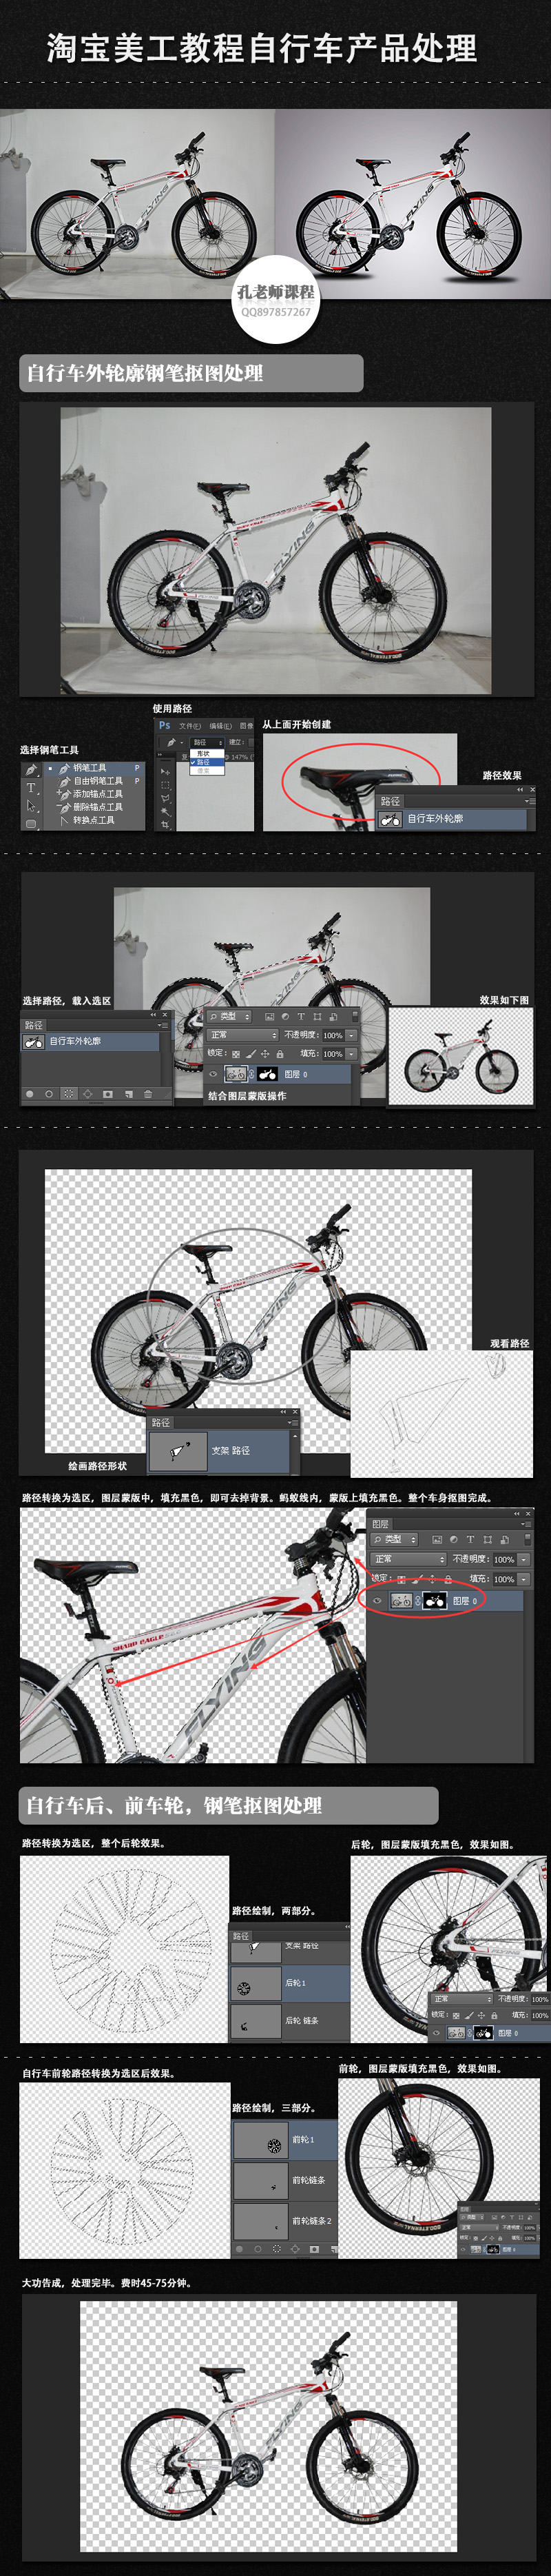 淘宝美工教程Photoshop自行车修图处理1